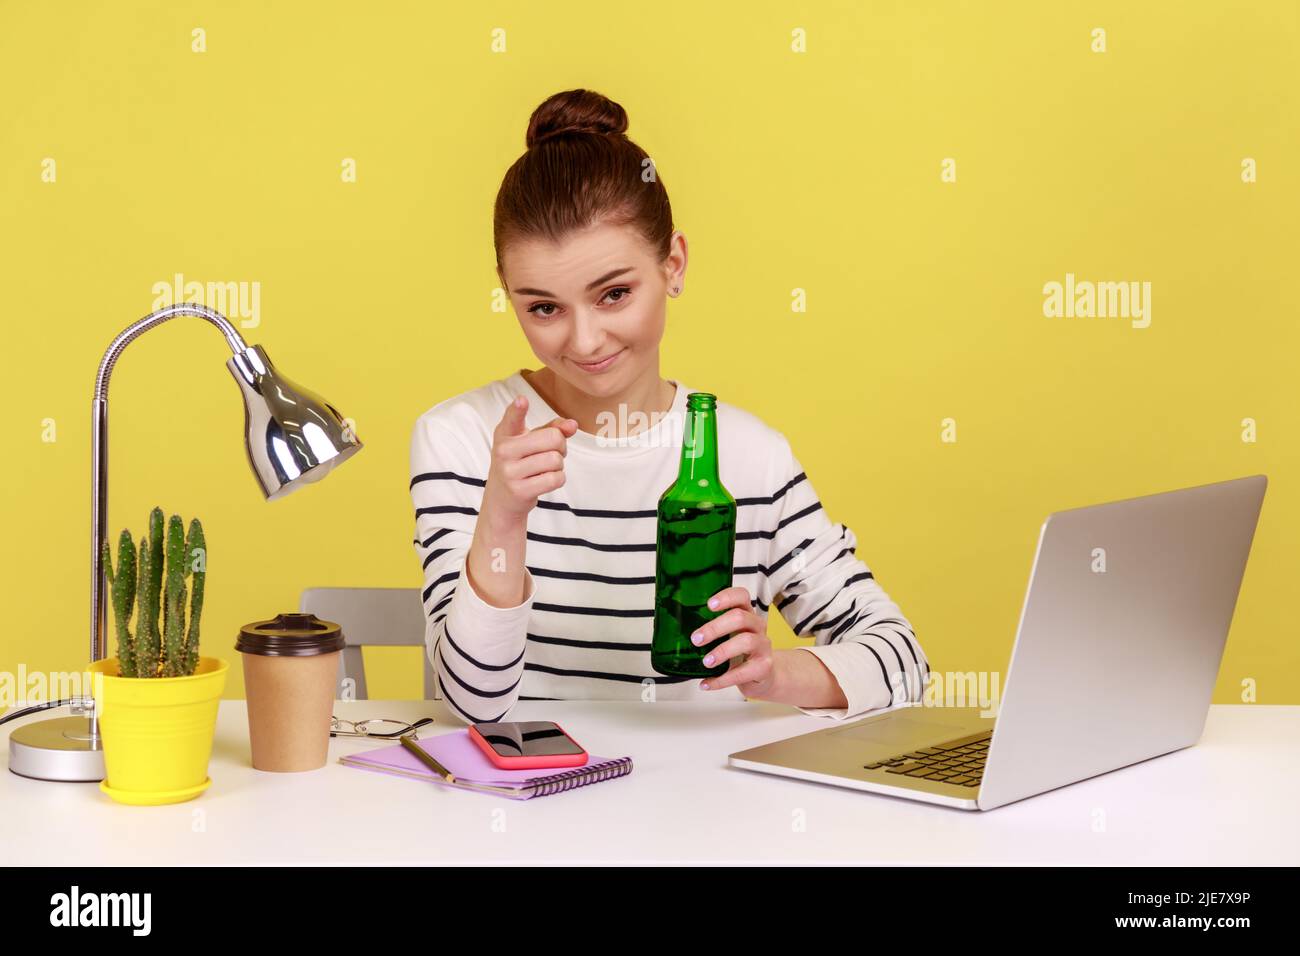 Porträt einer attraktiven jungen erwachsenen Frau im Büro, die eine Bierflasche in den Händen hält und mit einem Lächeln auf die Kamera zeigt. Studio-Innenaufnahme isoliert auf gelbem Hintergrund. Stockfoto